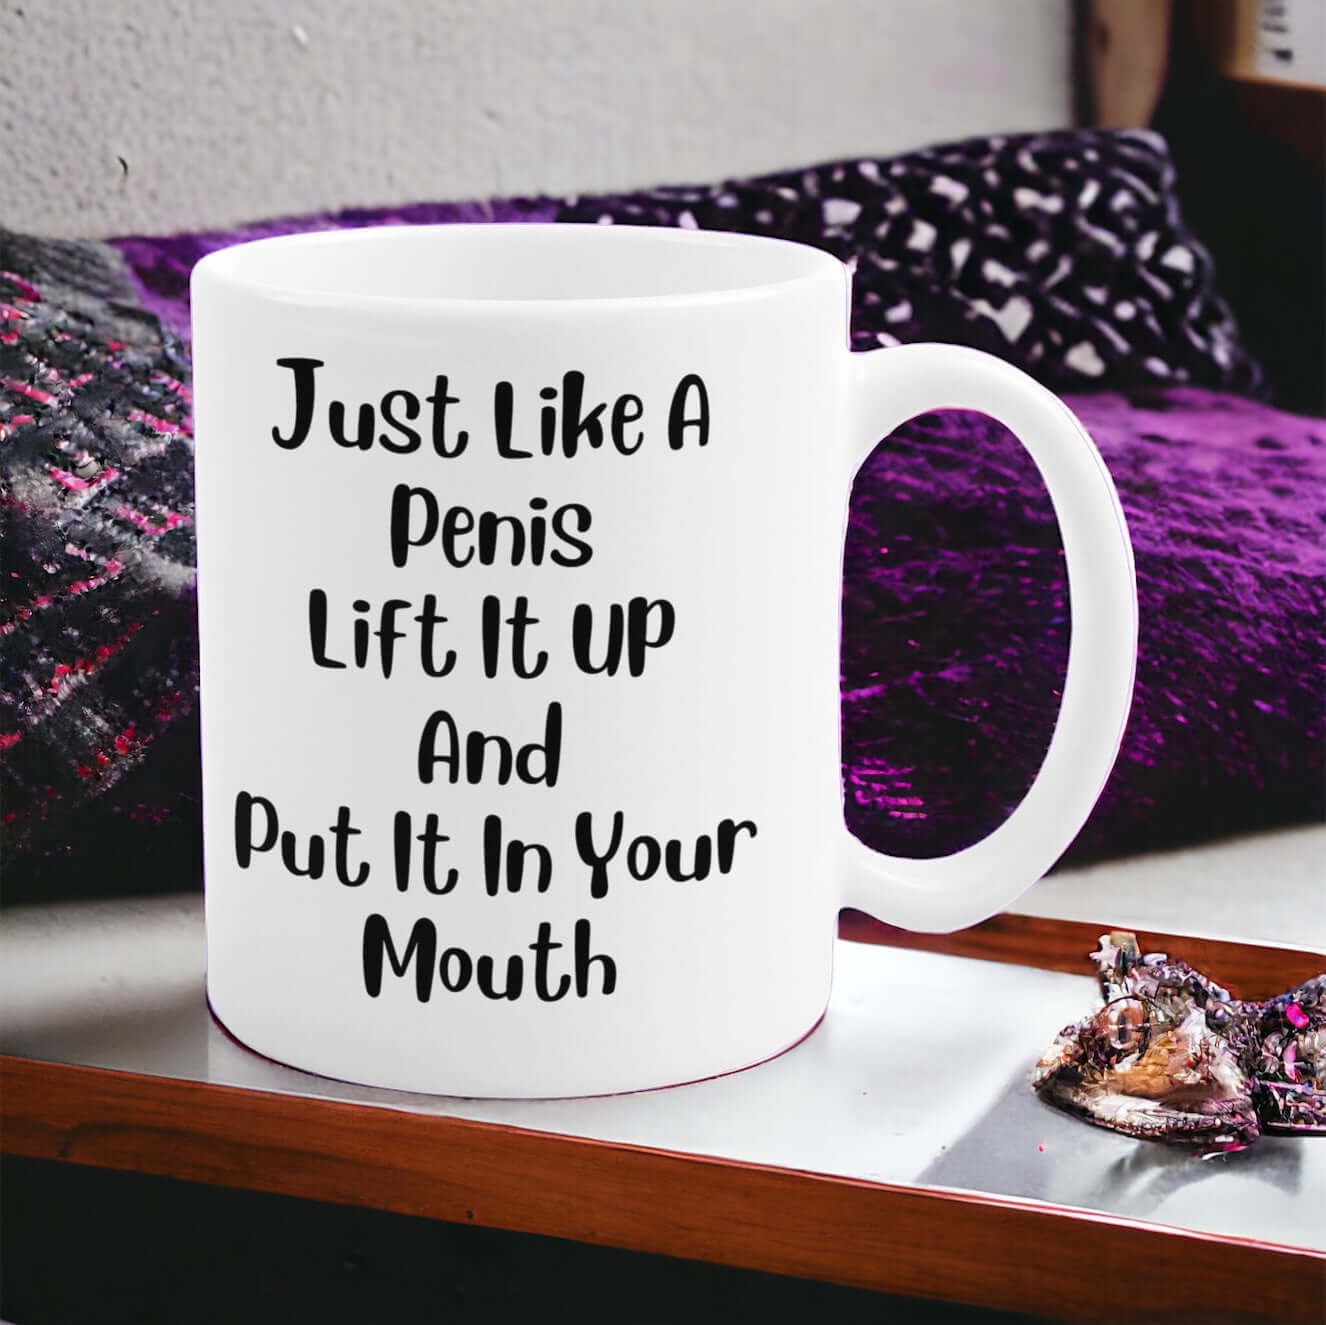 Funny Coffee Mug Gift “Just Like A Penis” Gag Gift